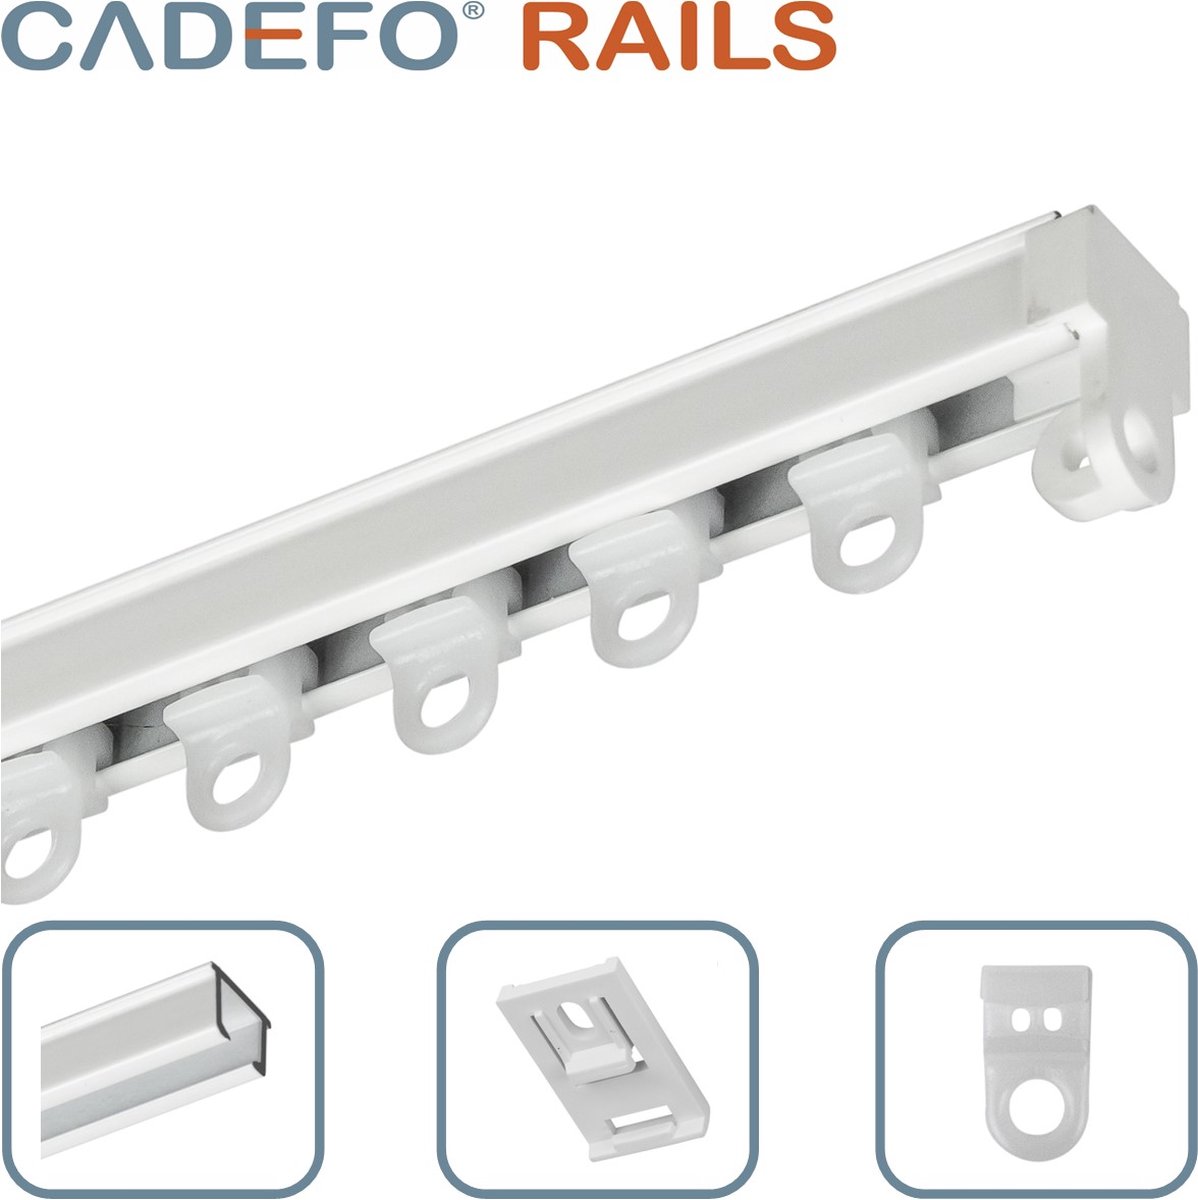 CADEFO RAILS (501 - 550 cm) Gordijnrails - Compleet op maat! - UIT 1 STUK - Leverbaar tot 6 meter - Plafondbevestiging - Lengte 528 cm